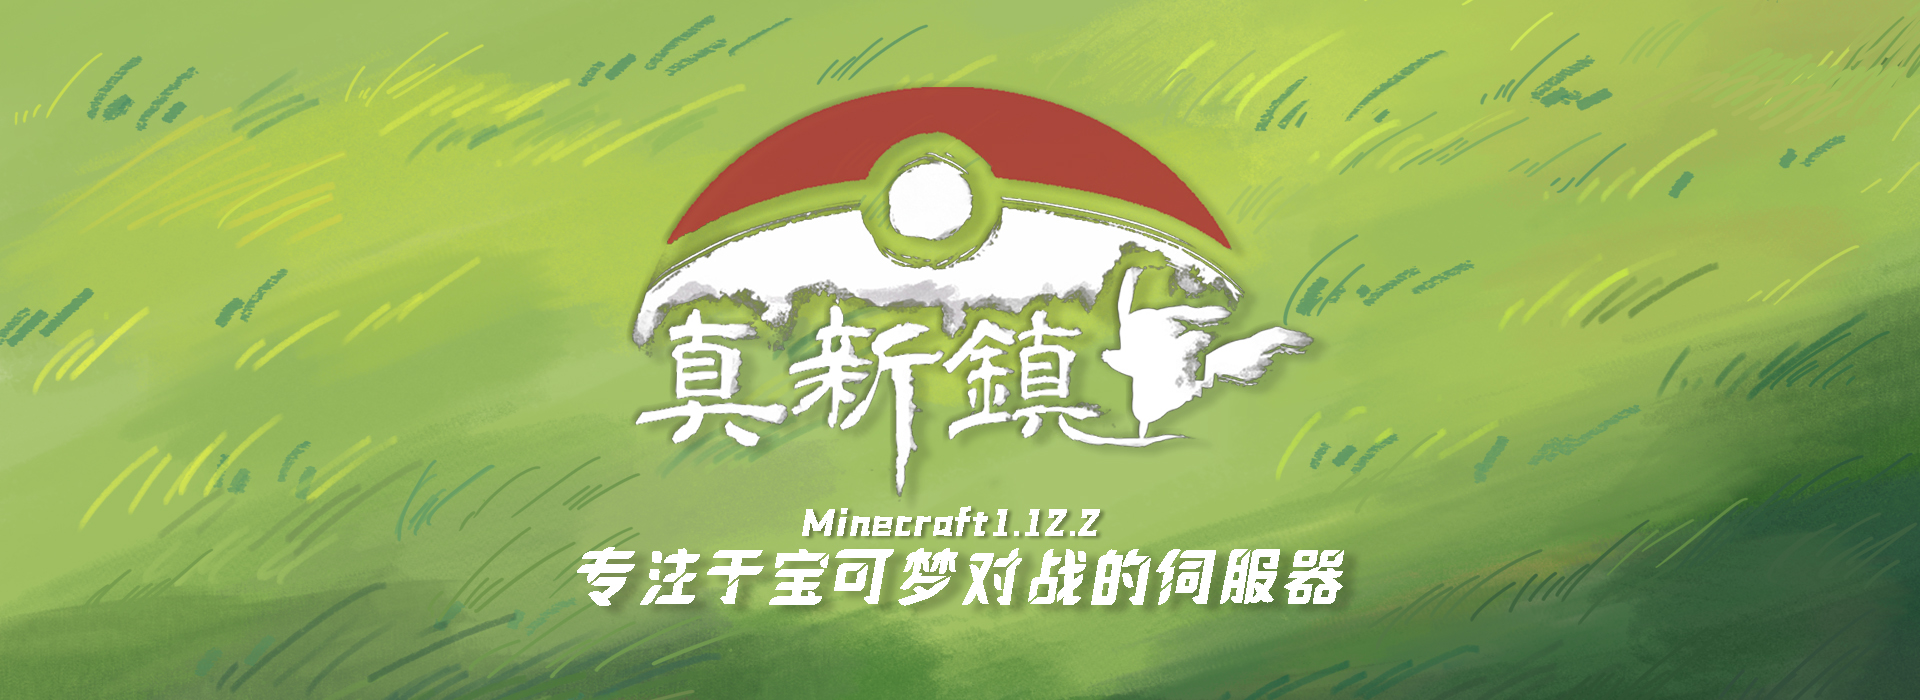 我的世界神奇宝贝服务器 Minecraft中文分享站